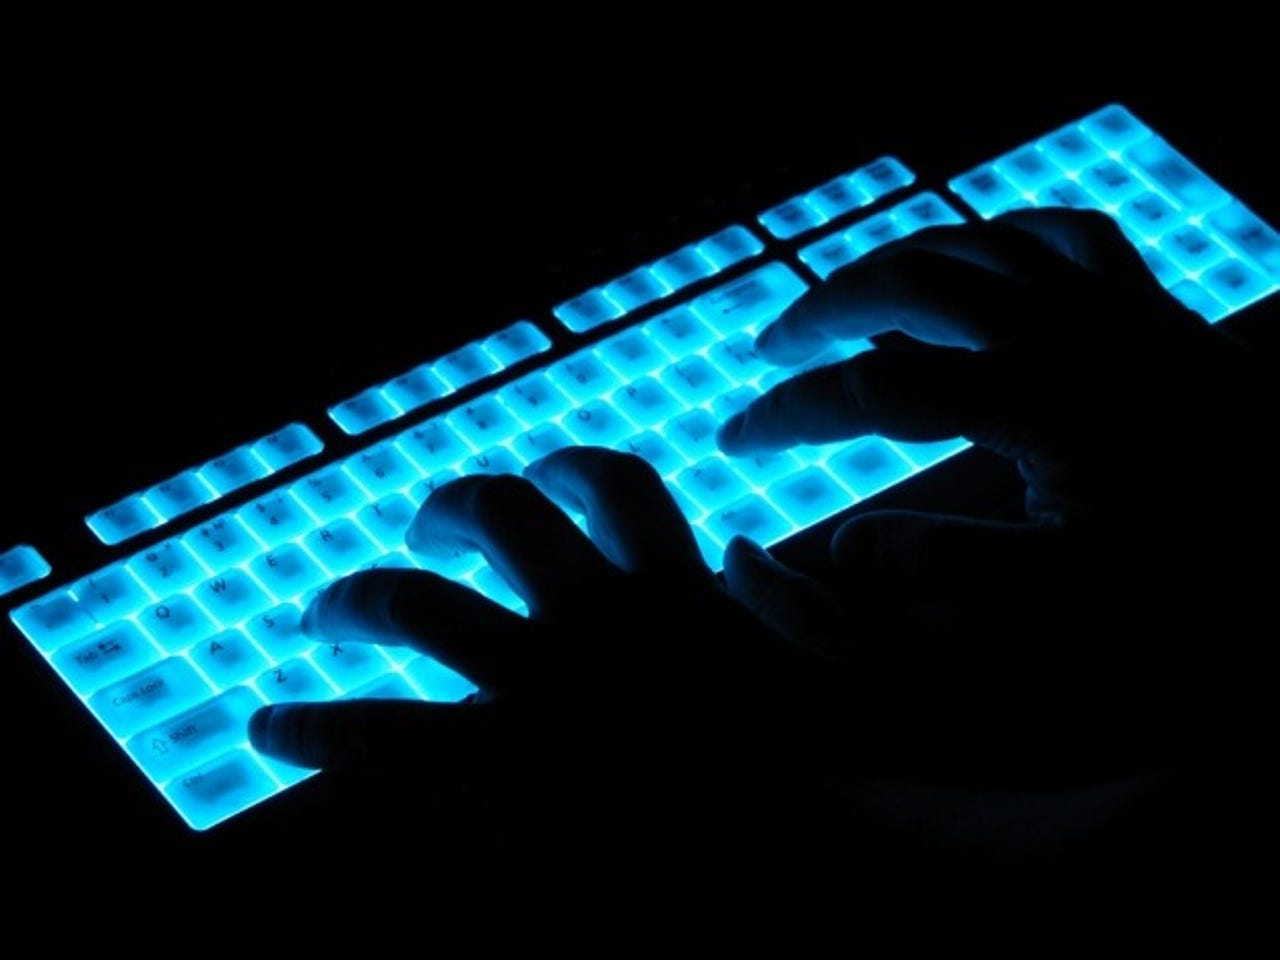 glowing-keyboard-hacker-security-620x465-v1.jpg